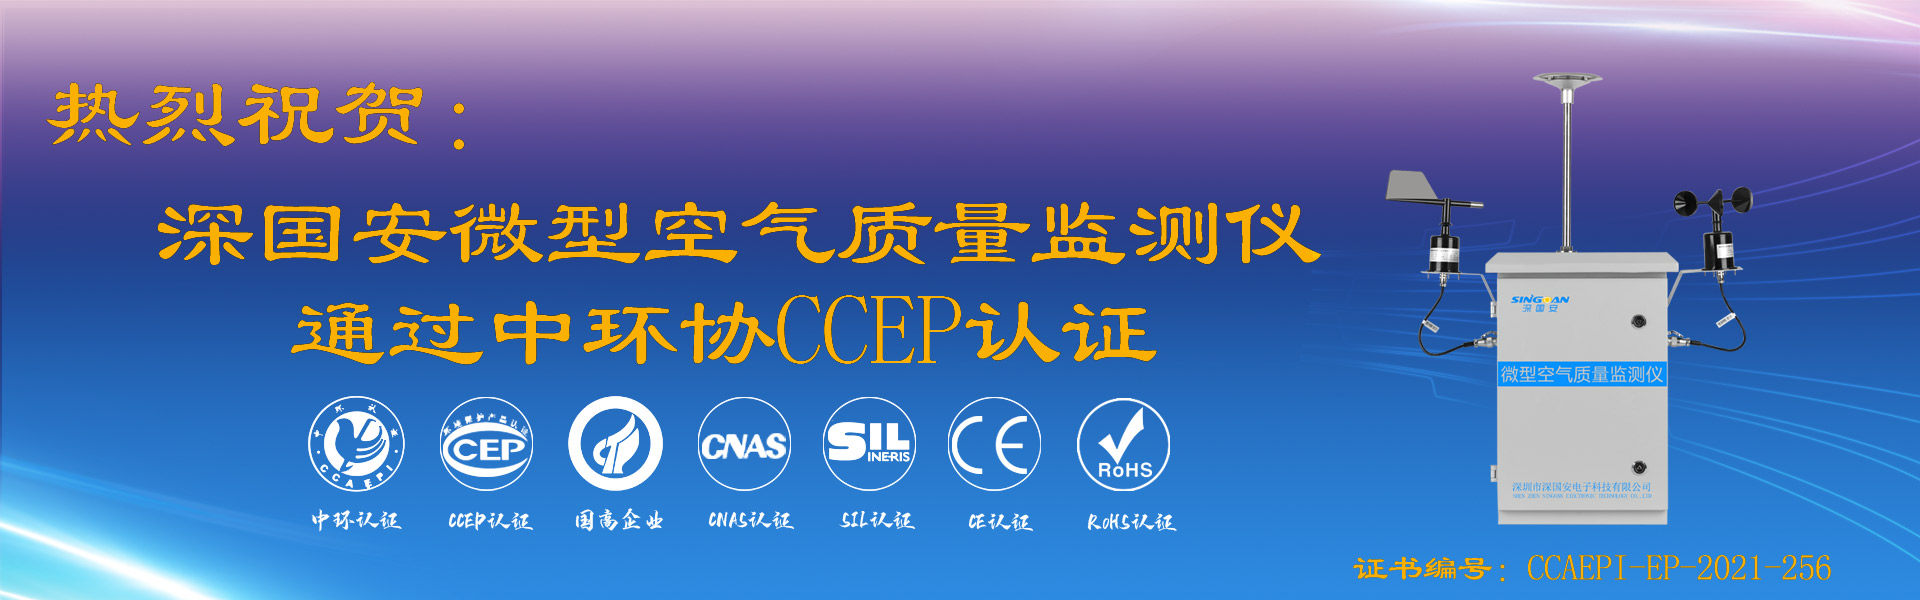 深国安微型空气质量监测仪通过CCEP认证